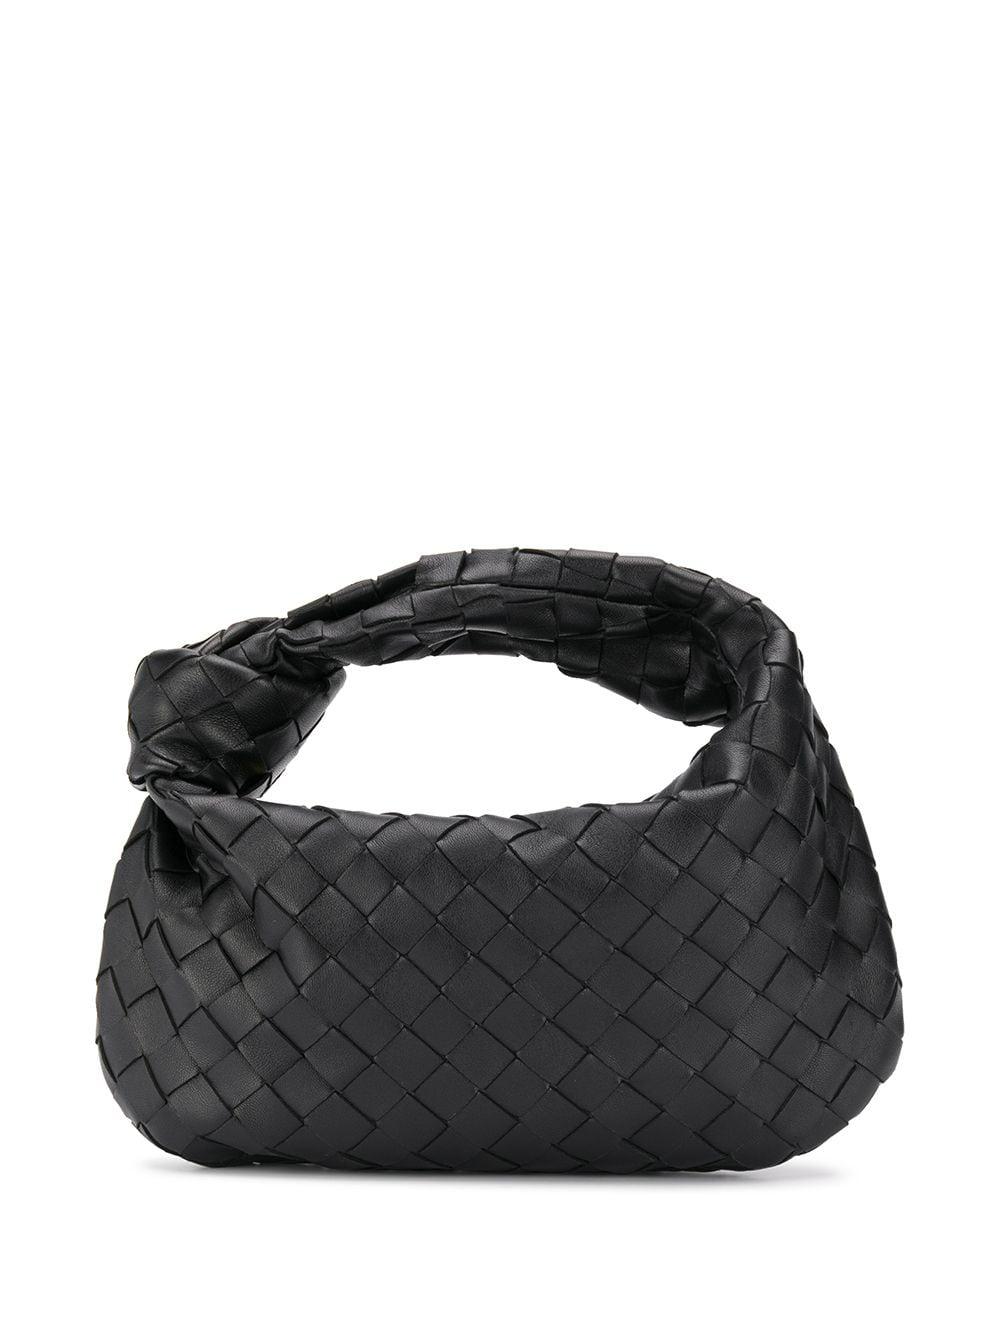 Bottega Veneta Leather Mini Jodie Shoulder Bag in Nero/ Gold (Black ...